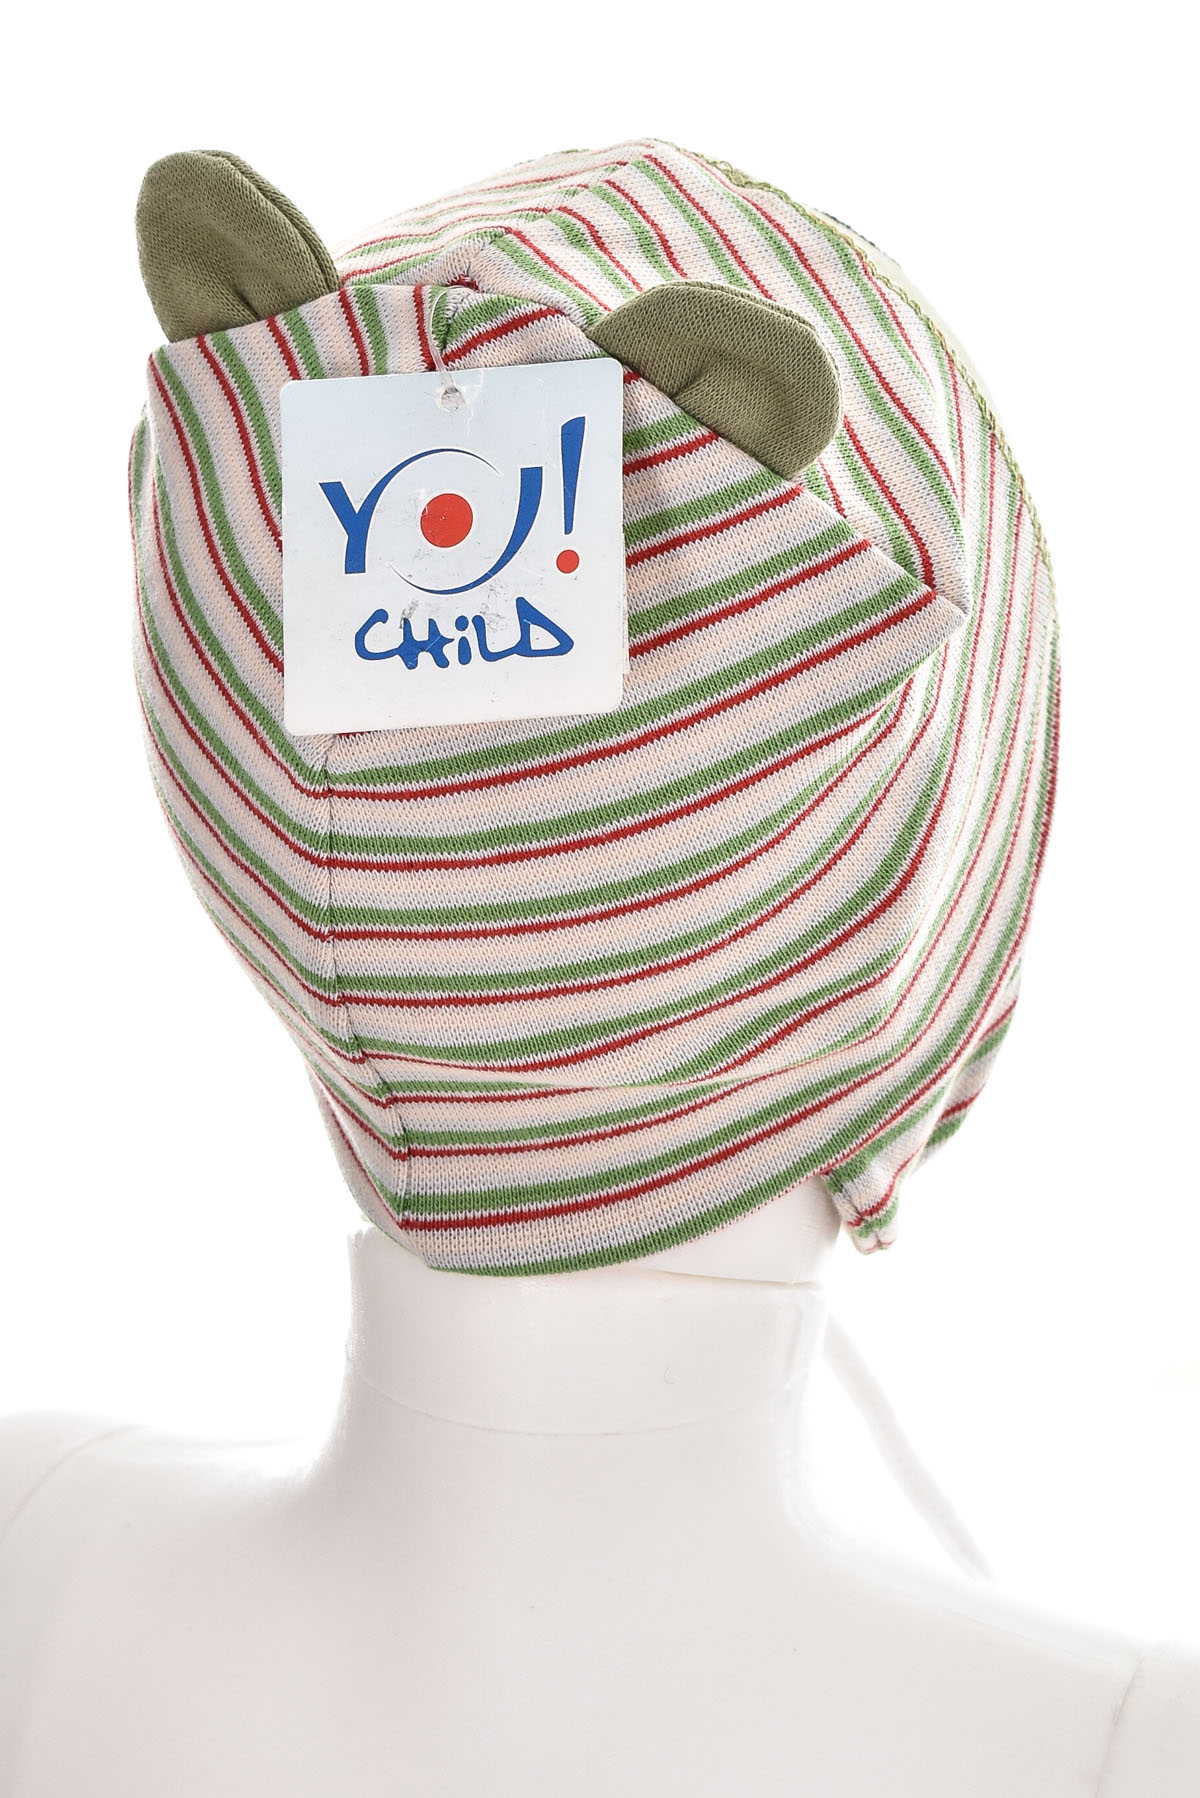 Παιδικό καπέλο - YO! club - 1